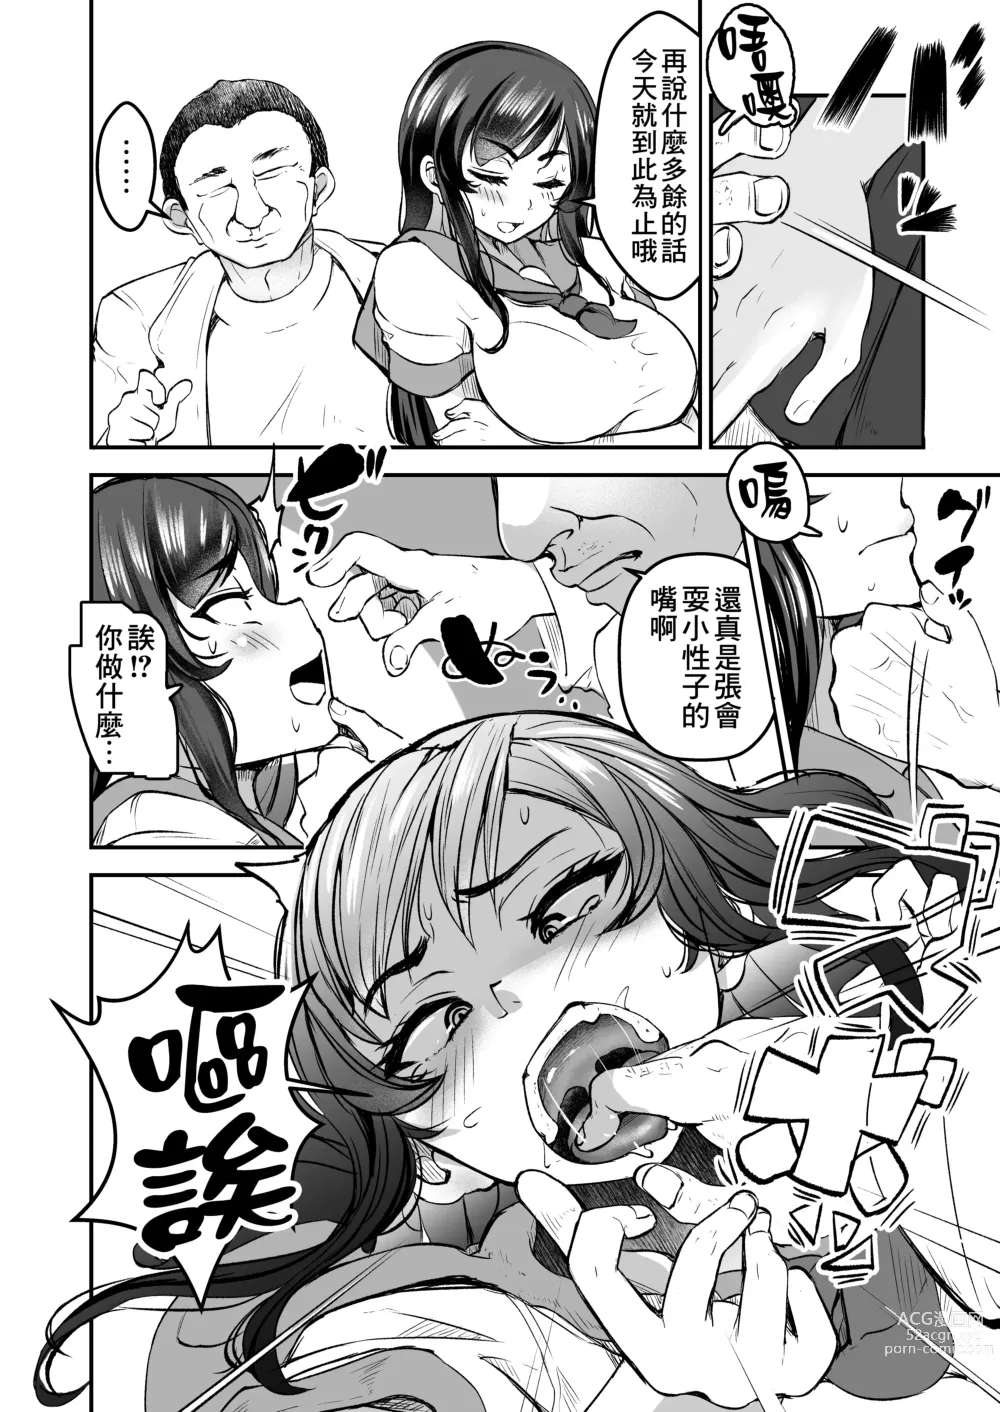 Page 6 of doujinshi 讓強勢JK墮落成為肉飛機杯 中篇